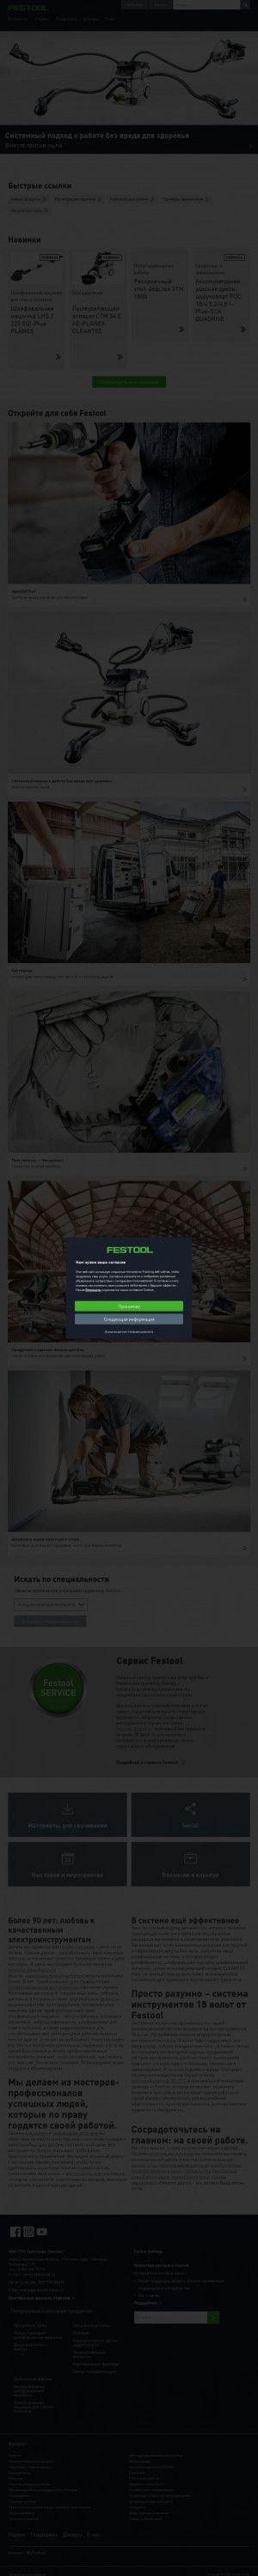 Предпросмотр для www.festool.ru — ТТС Тултехник Системс